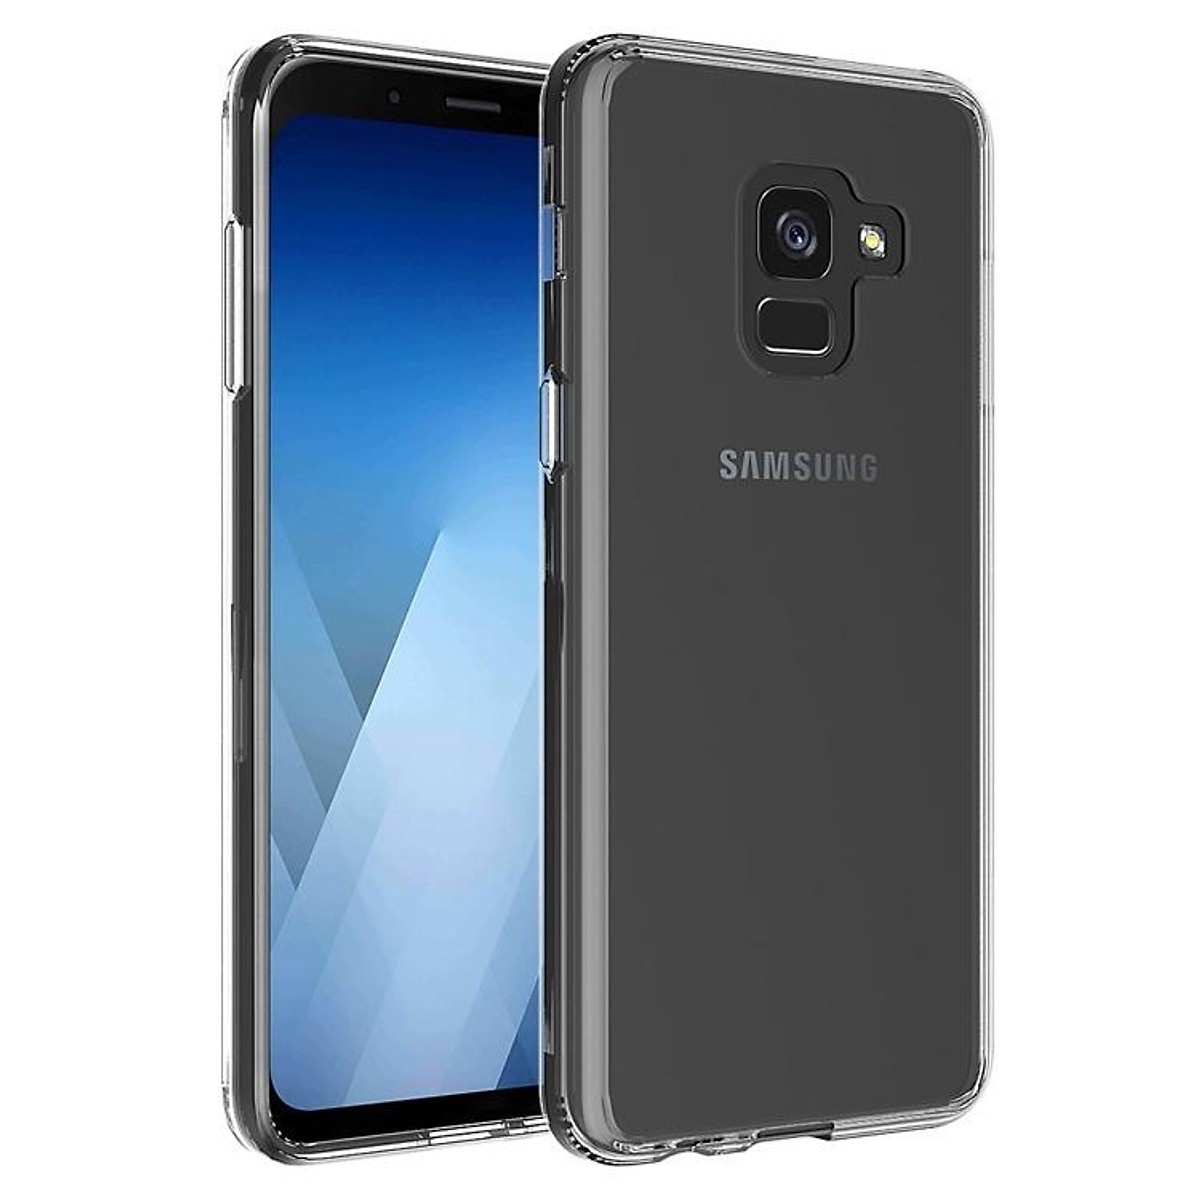 Ốp lưng dẻo silicon trong suốt cho Samsung Galaxy J6 2018 hiệu Ultra Thin